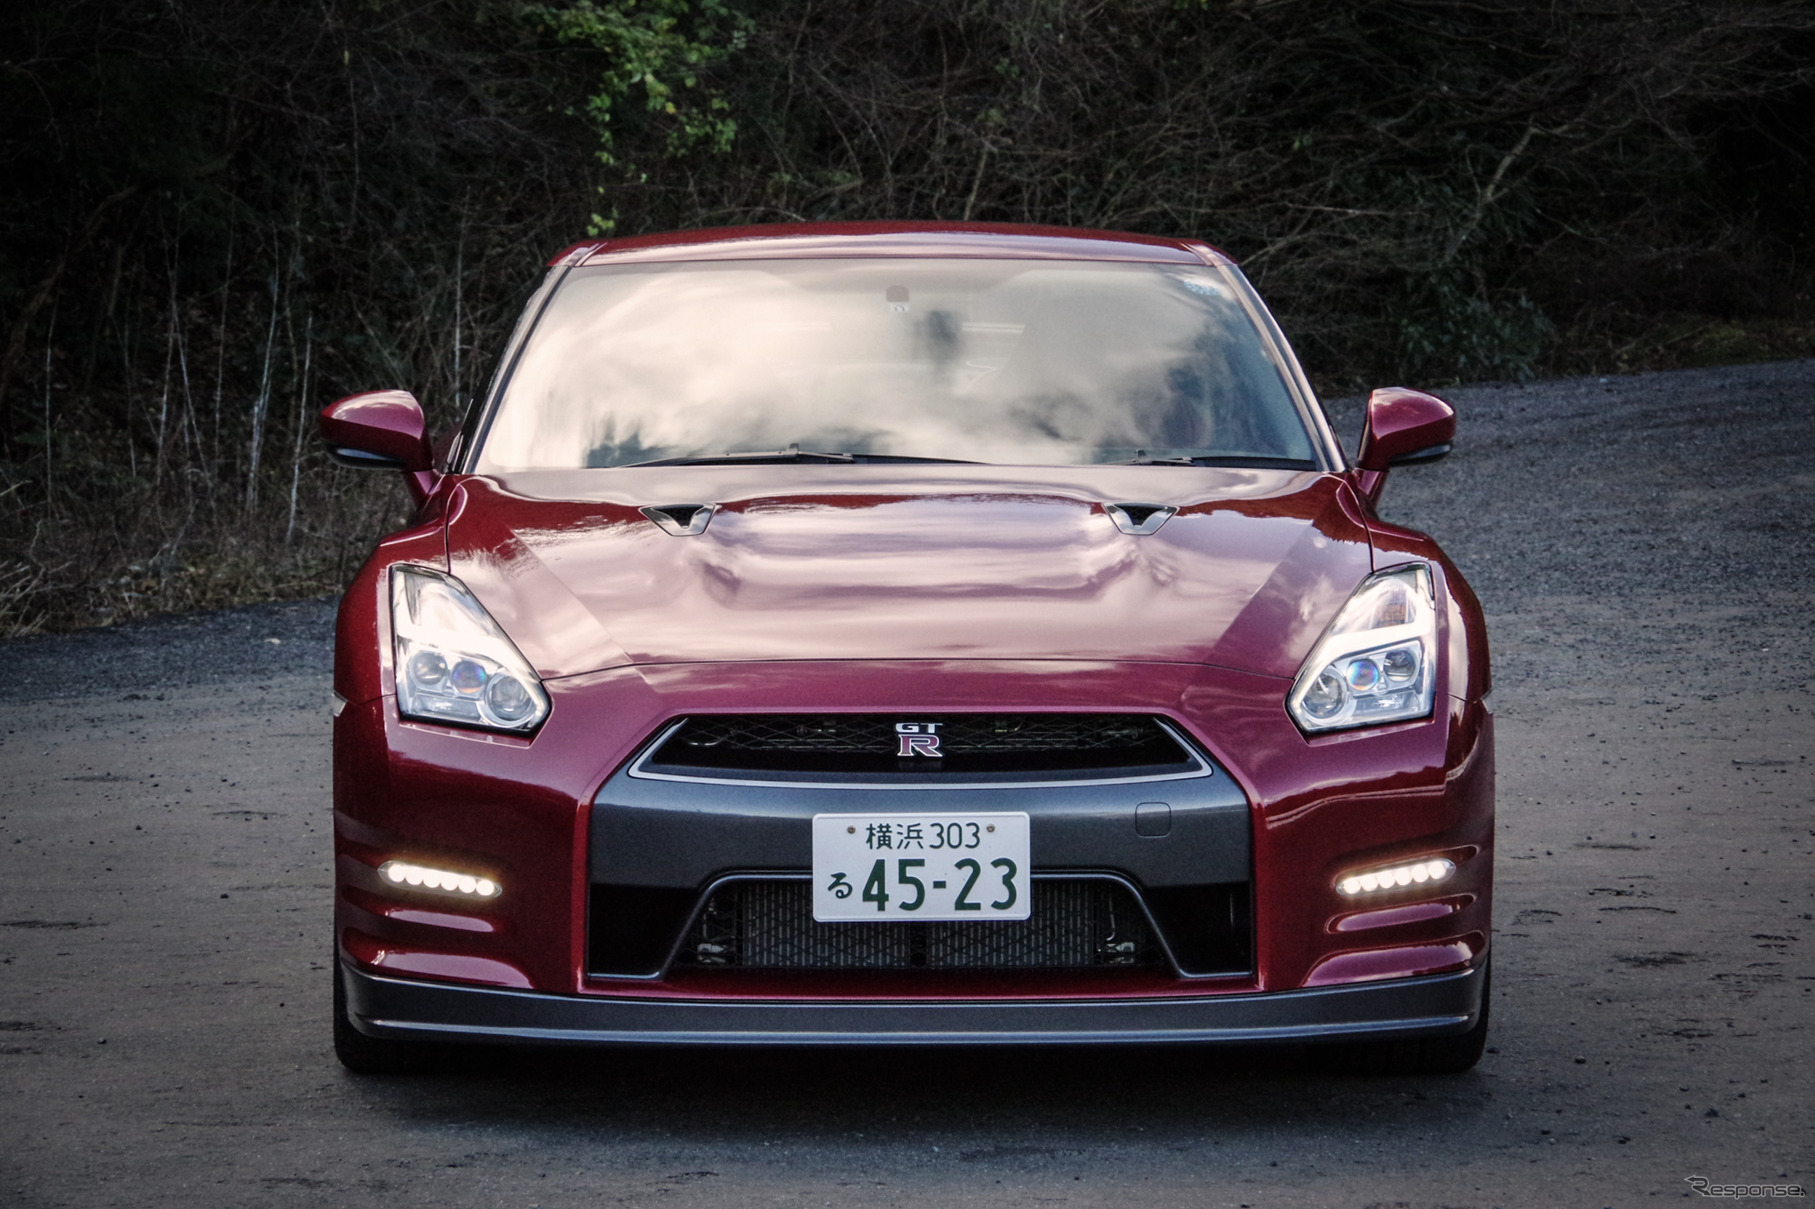 日産 GT-R 2015年モデル